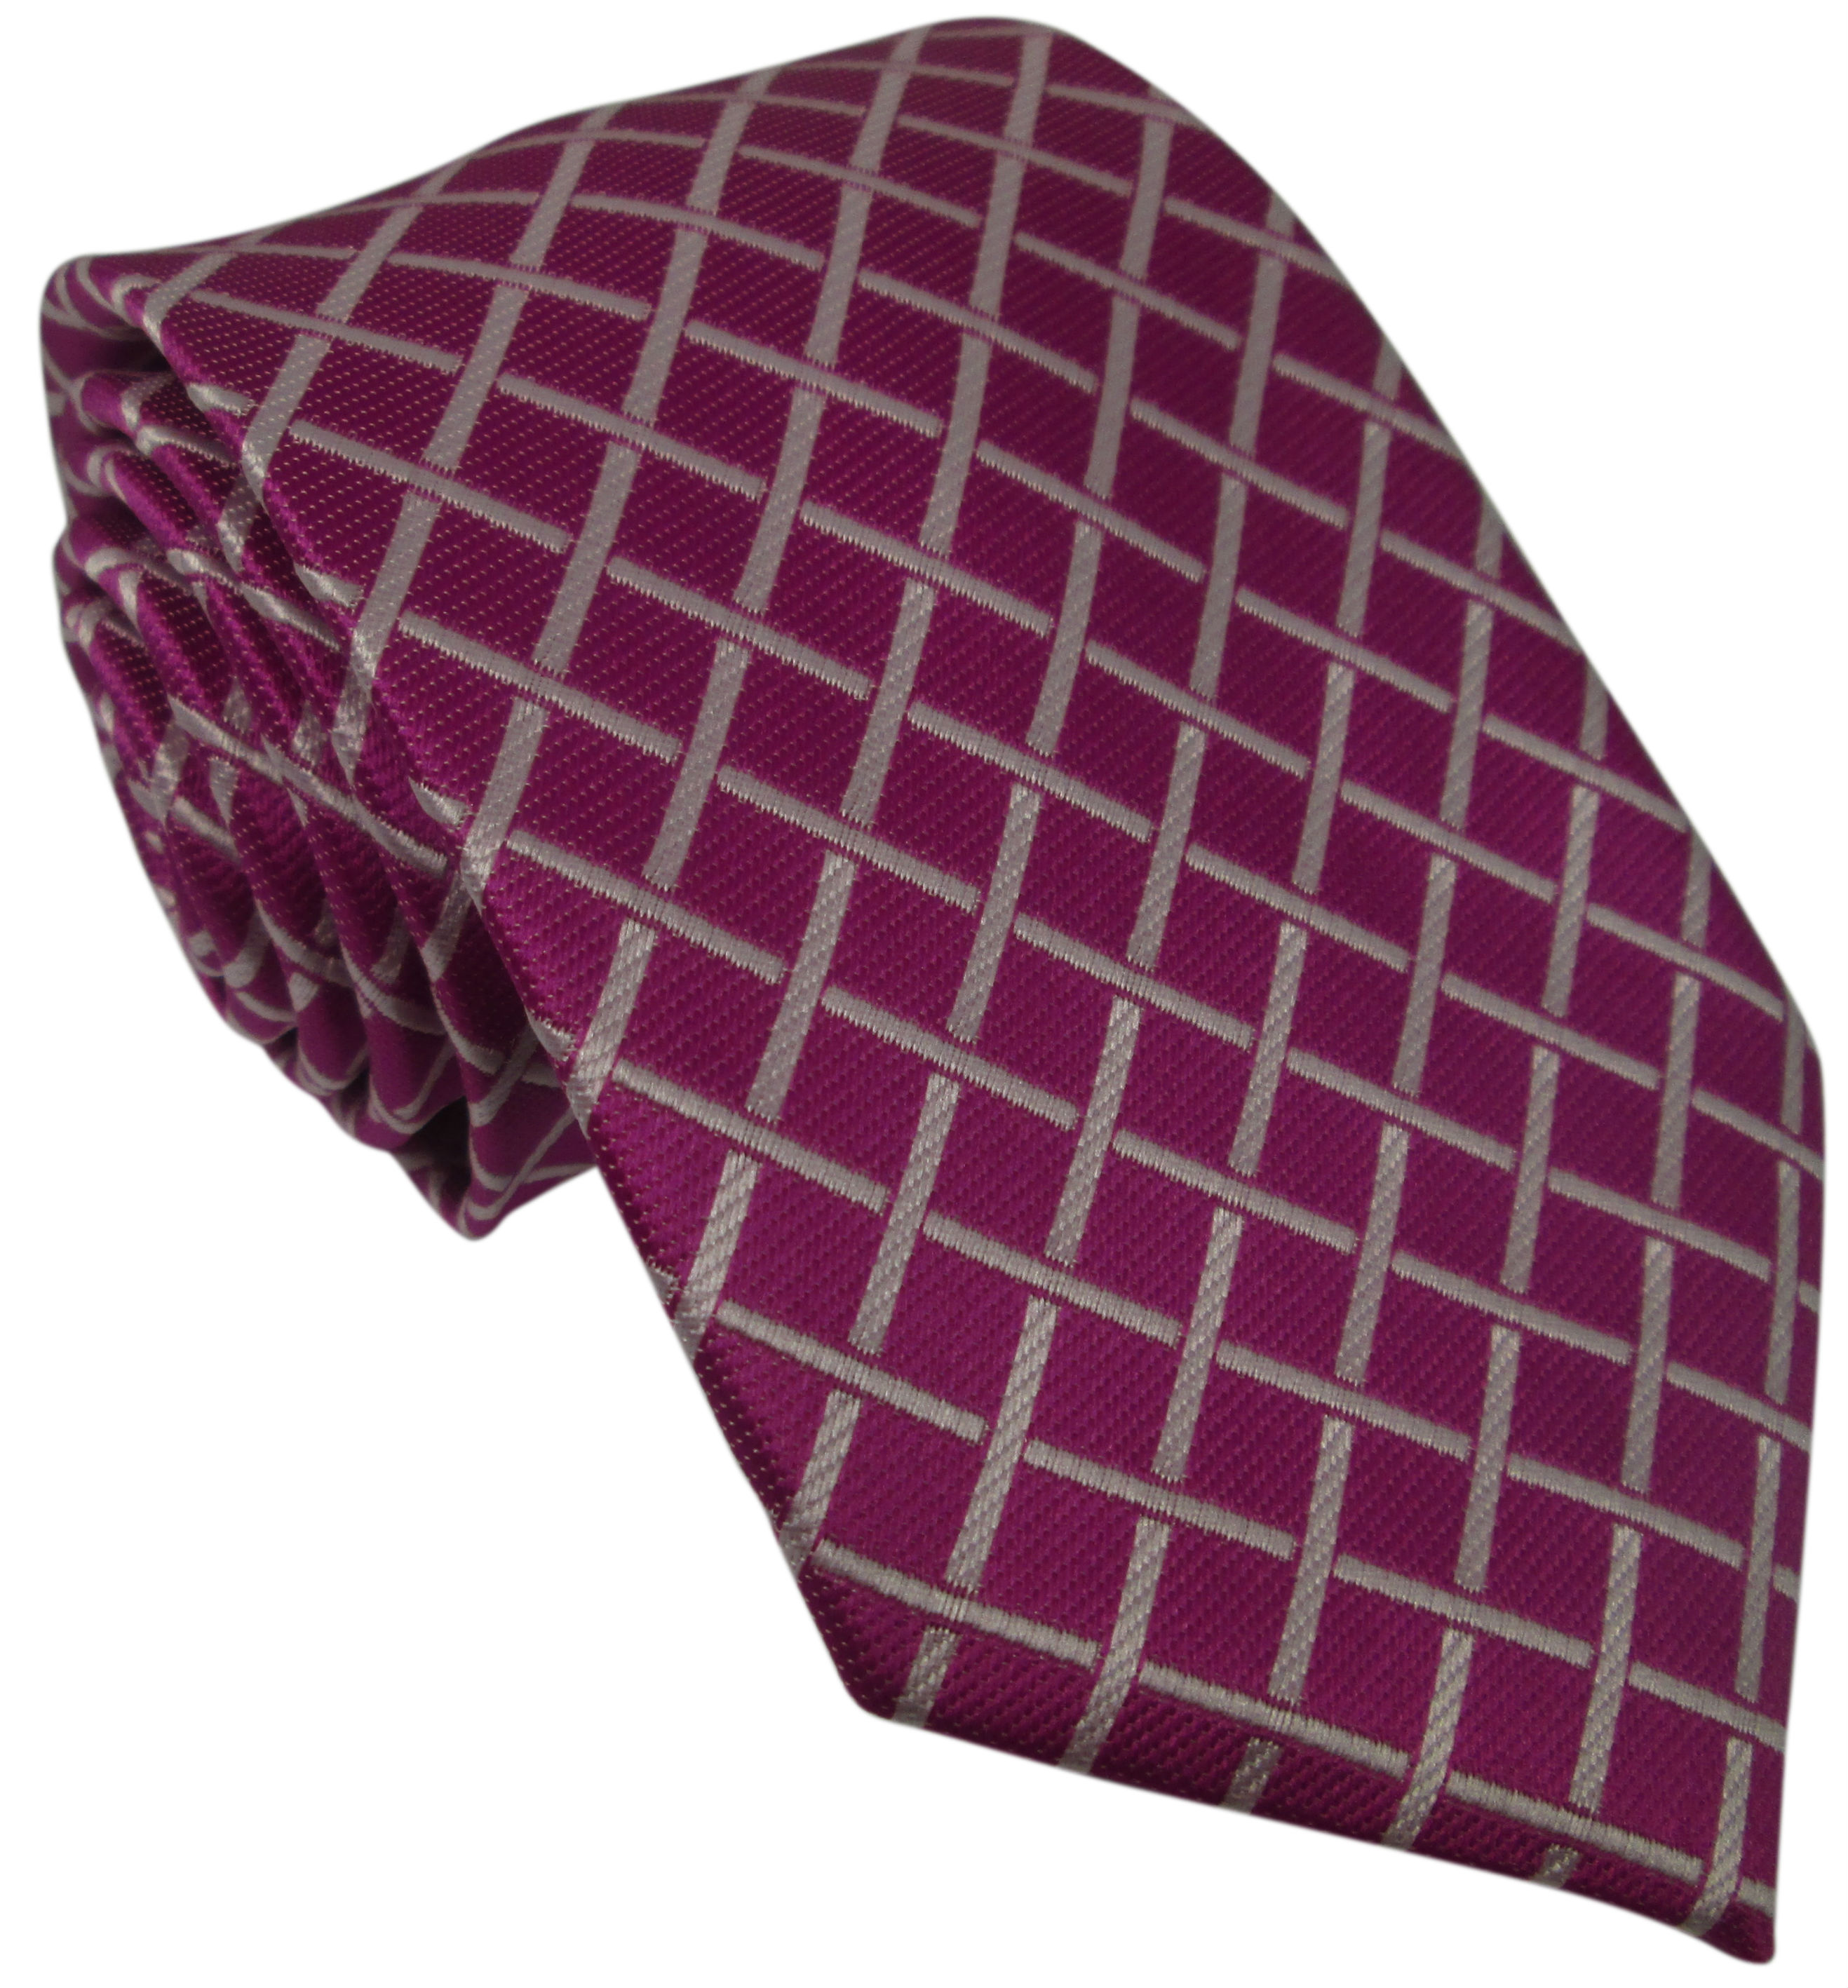 Purple Silk Tie with White Grid Pattern